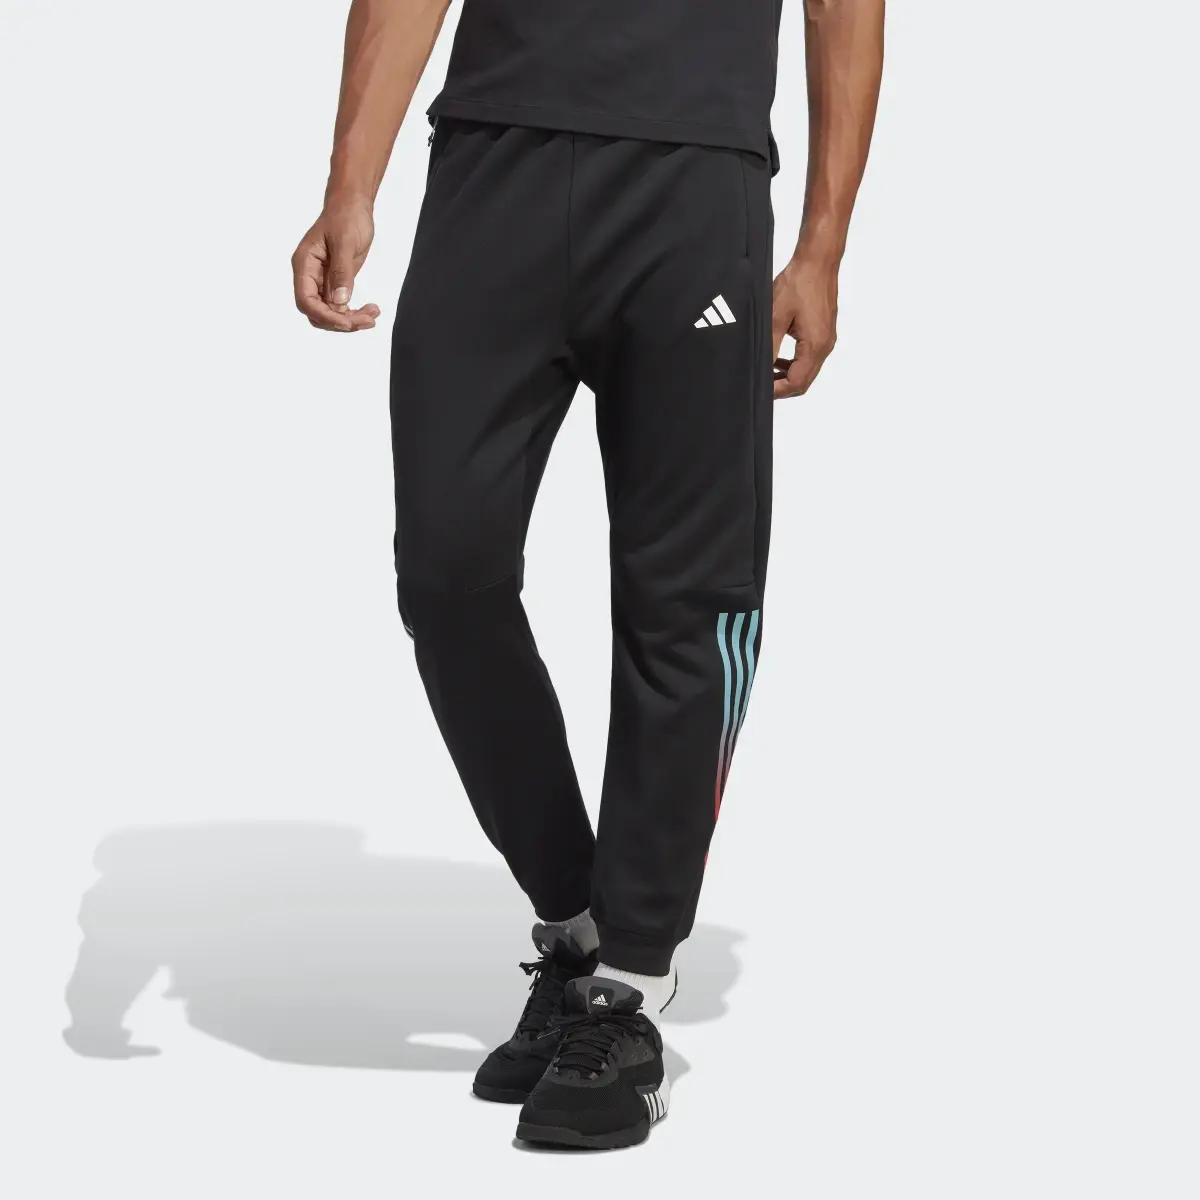 Adidas Train Icons 3-Stripes Training Pants. 1